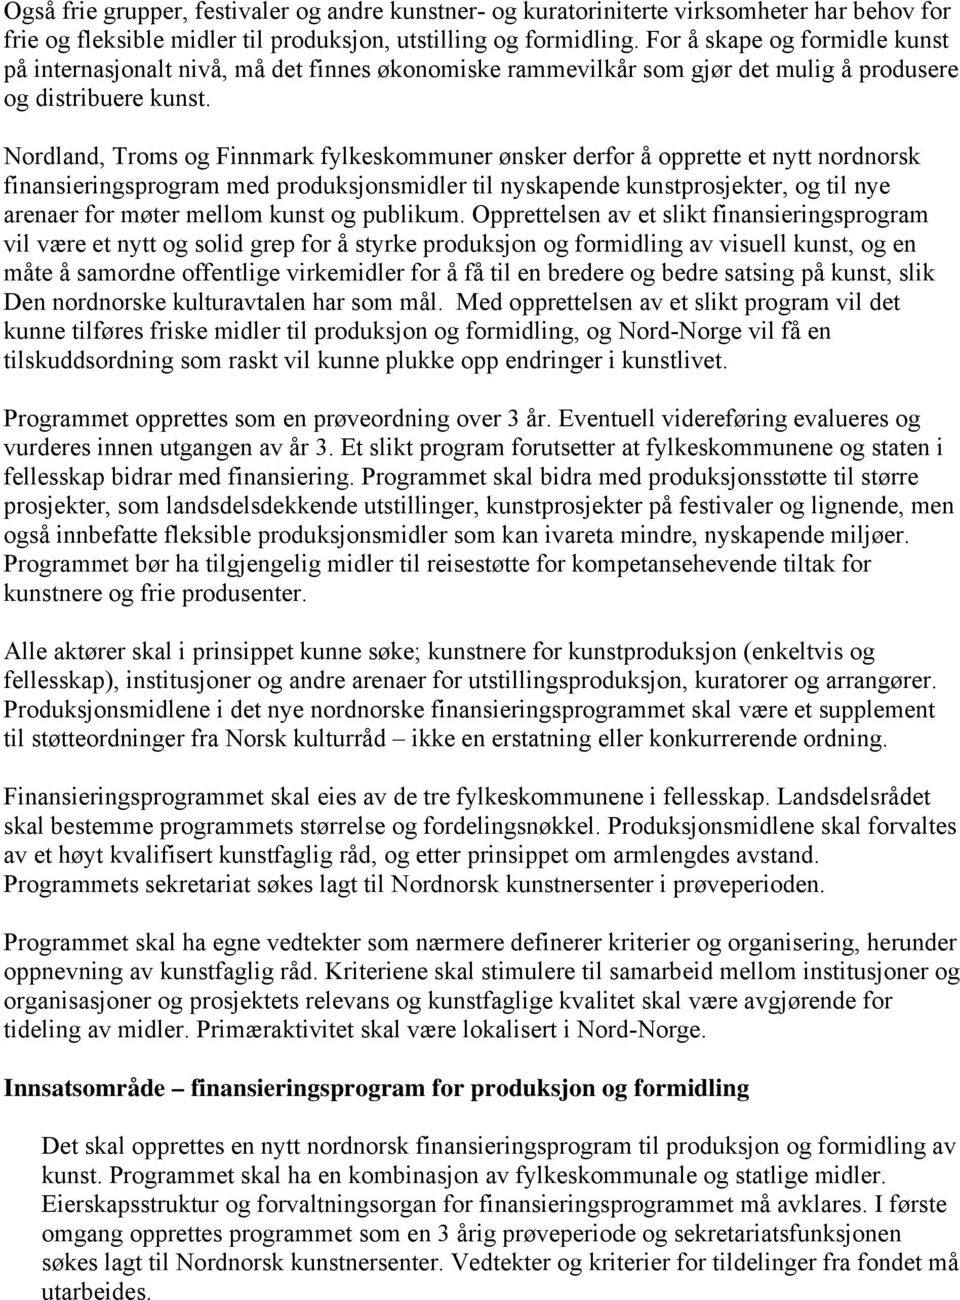 Nordland, Troms og Finnmark fylkeskommuner ønsker derfor å opprette et nytt nordnorsk finansieringsprogram med produksjonsmidler til nyskapende kunstprosjekter, og til nye arenaer for møter mellom